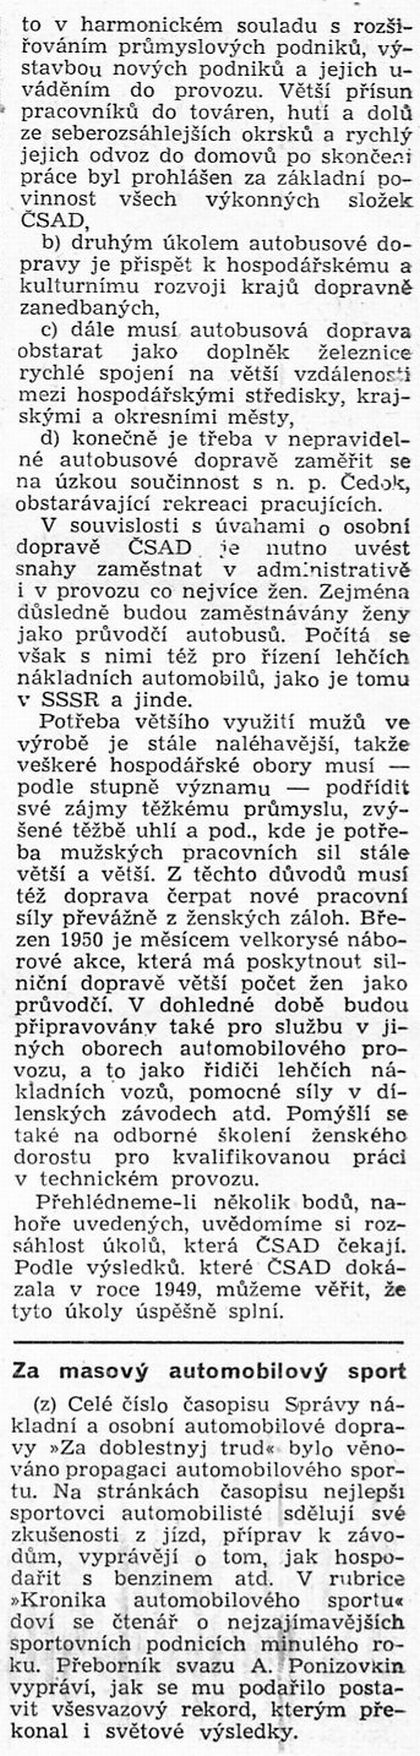 60 let ČSAD:Ze Světa motorů 75 z března 1950.  Autobusová doprava pracujících 4.